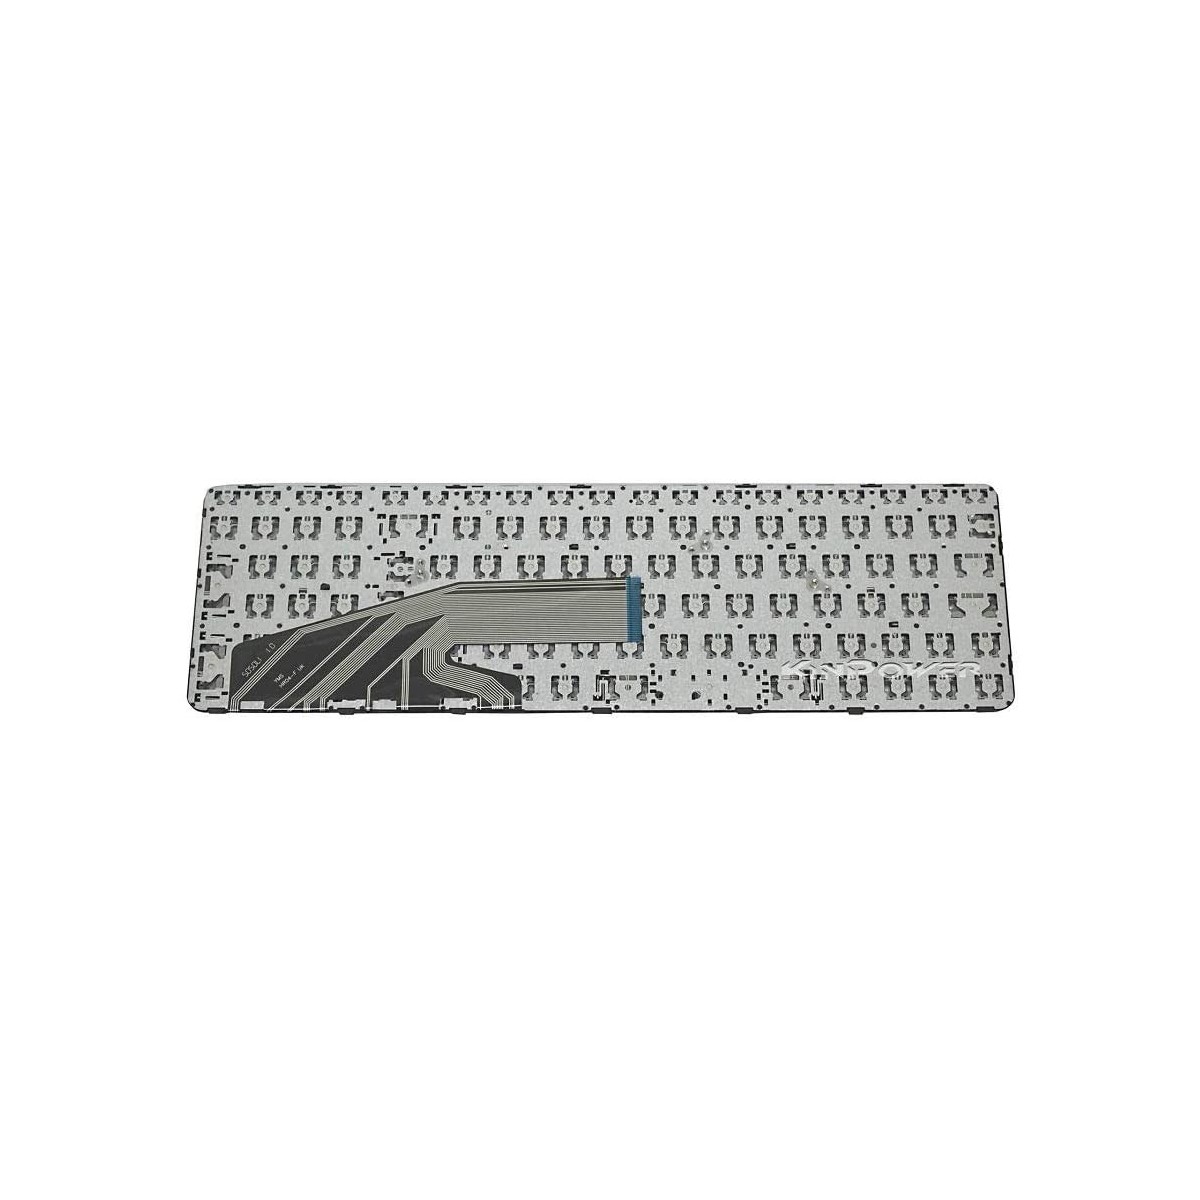 Clavier Français compatible Pour HP ProBook 650 G2 SERIES SG-80760-XBA